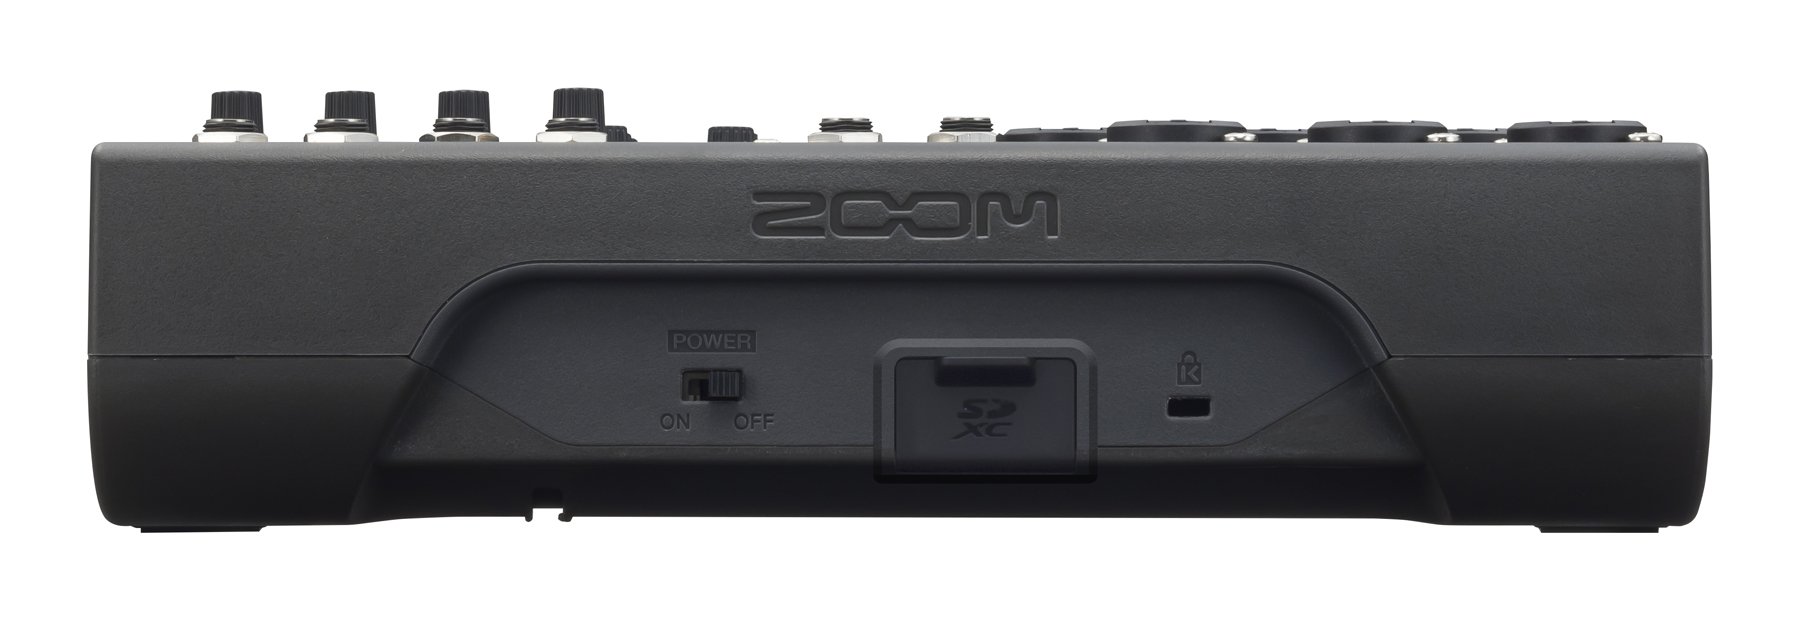 Микшерная консоль Zoom L-8 LiveTrak